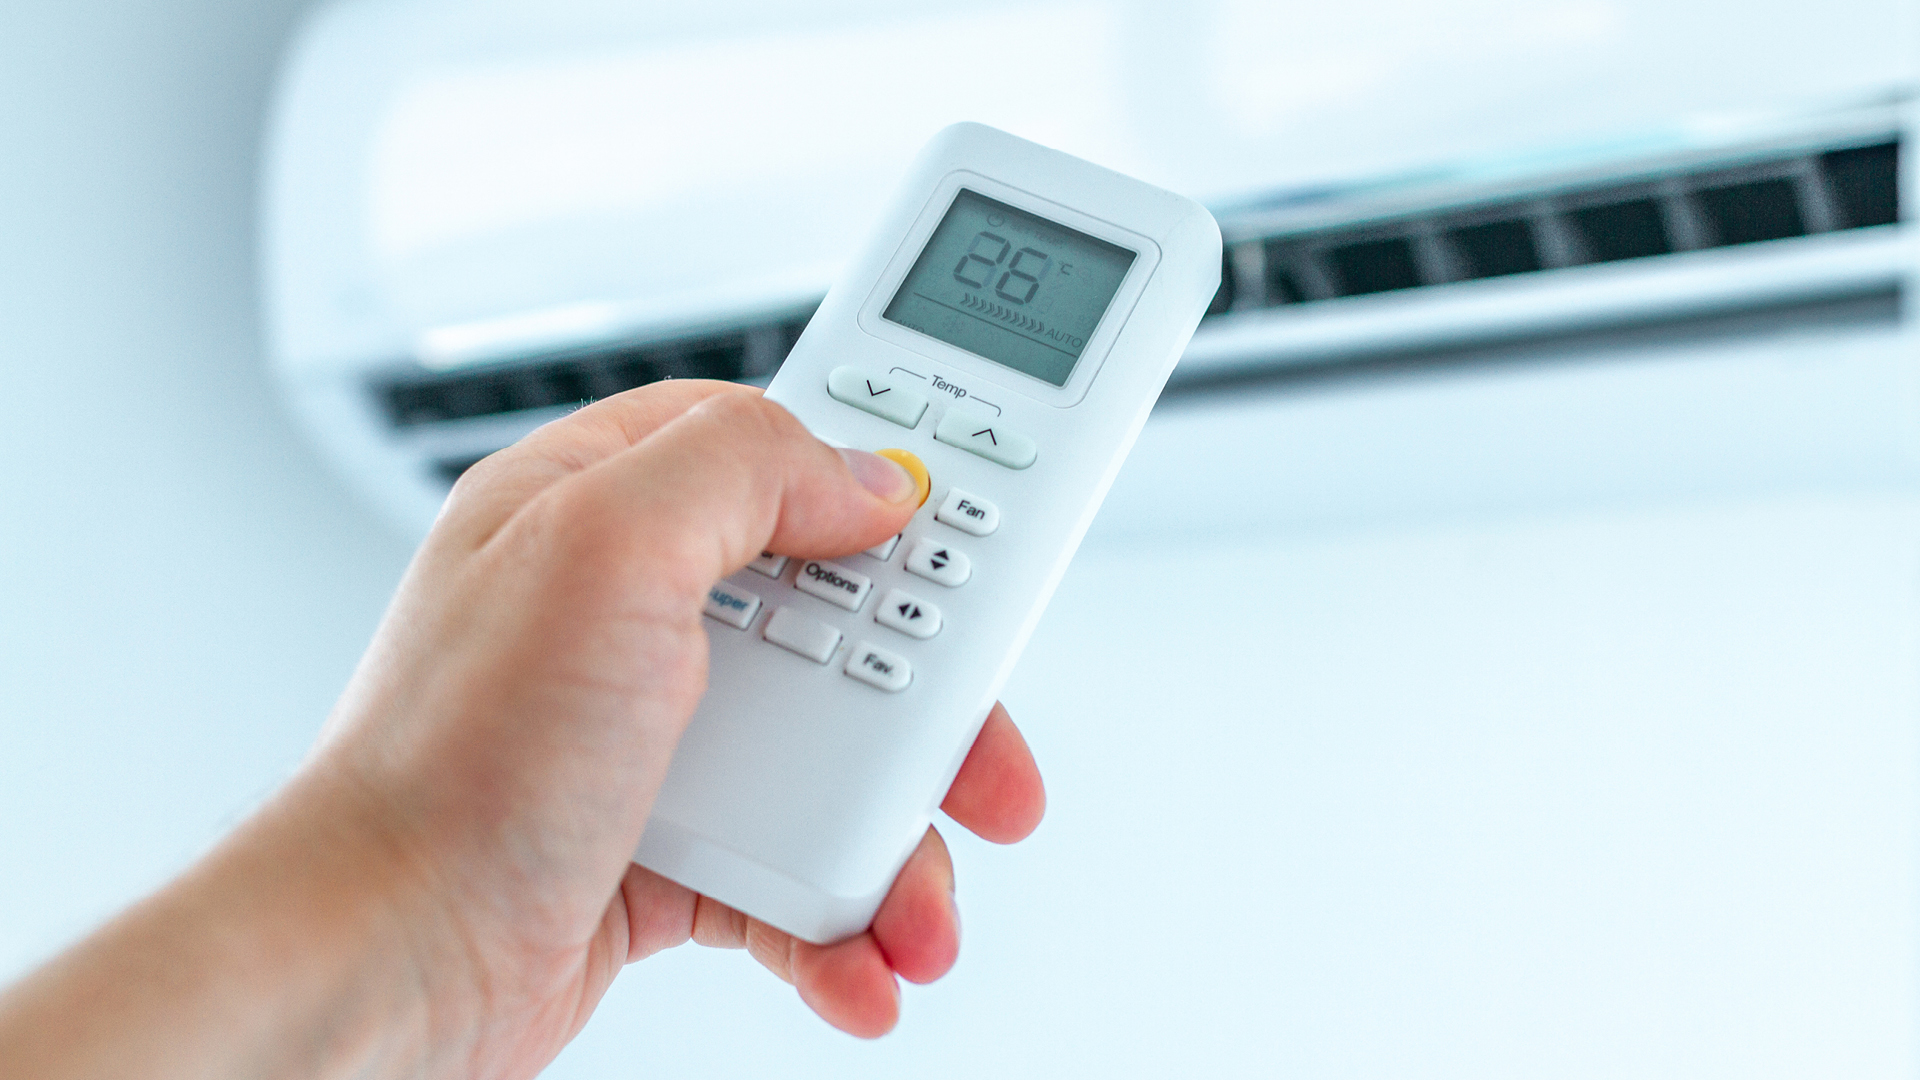 Que funcionalidades tem o ar condicionado, além de aquecer e arrefecer?